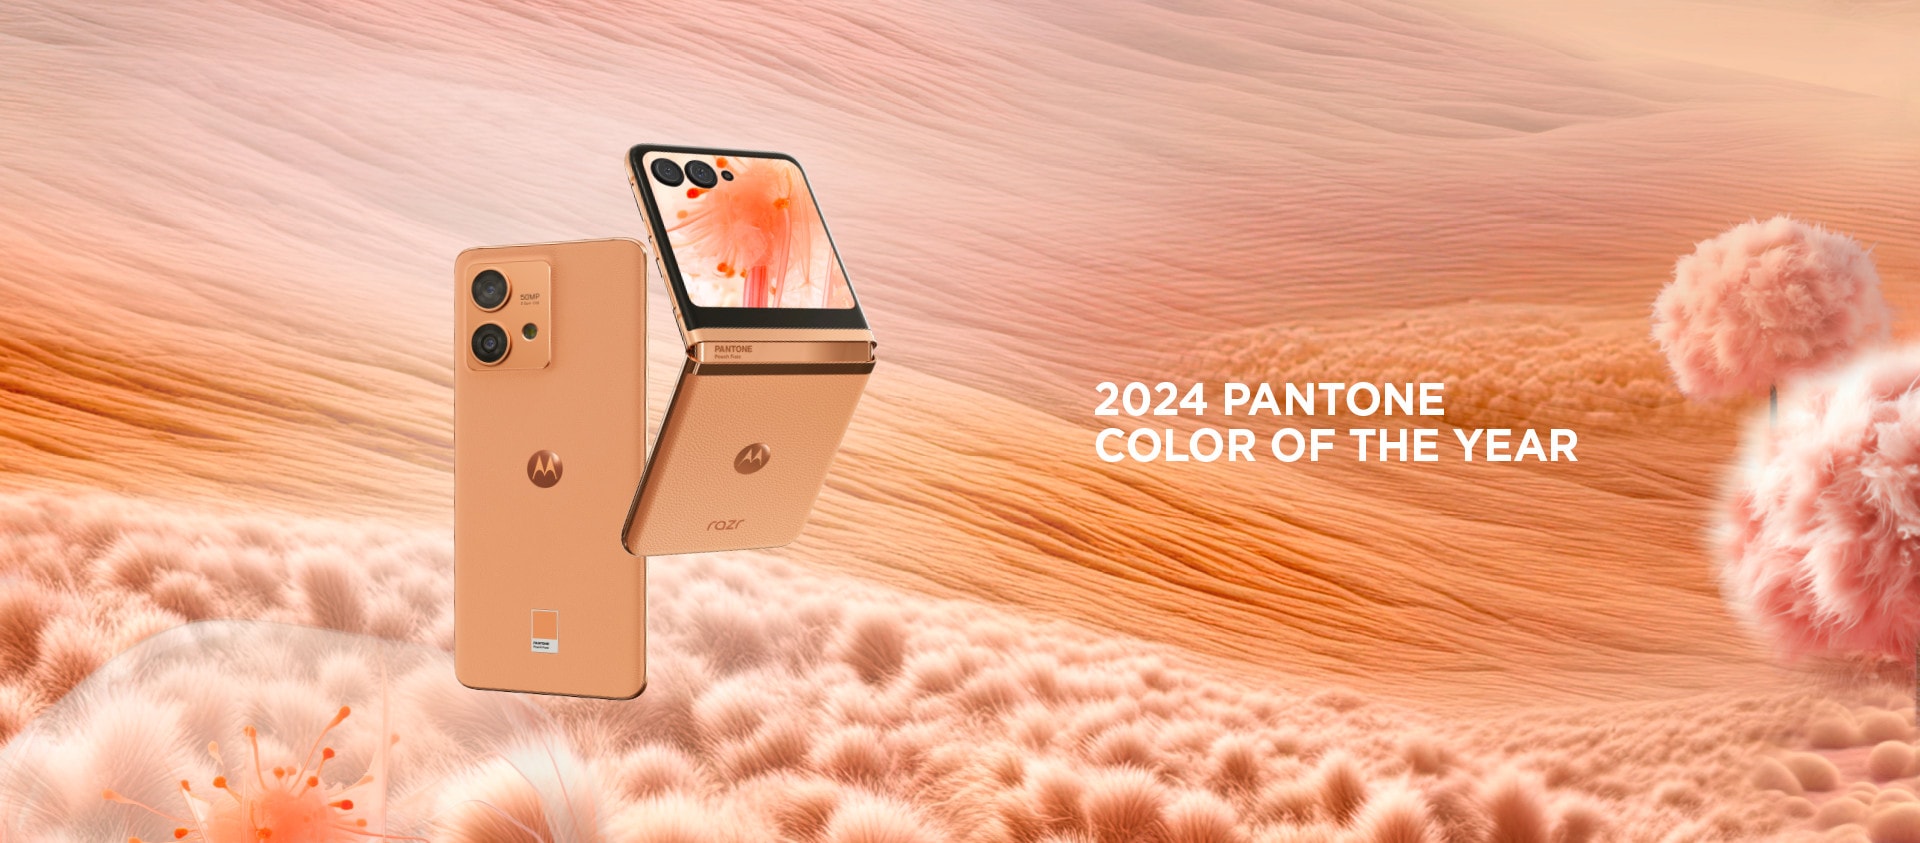 Farbou roka 2024 je Peach Fuzz